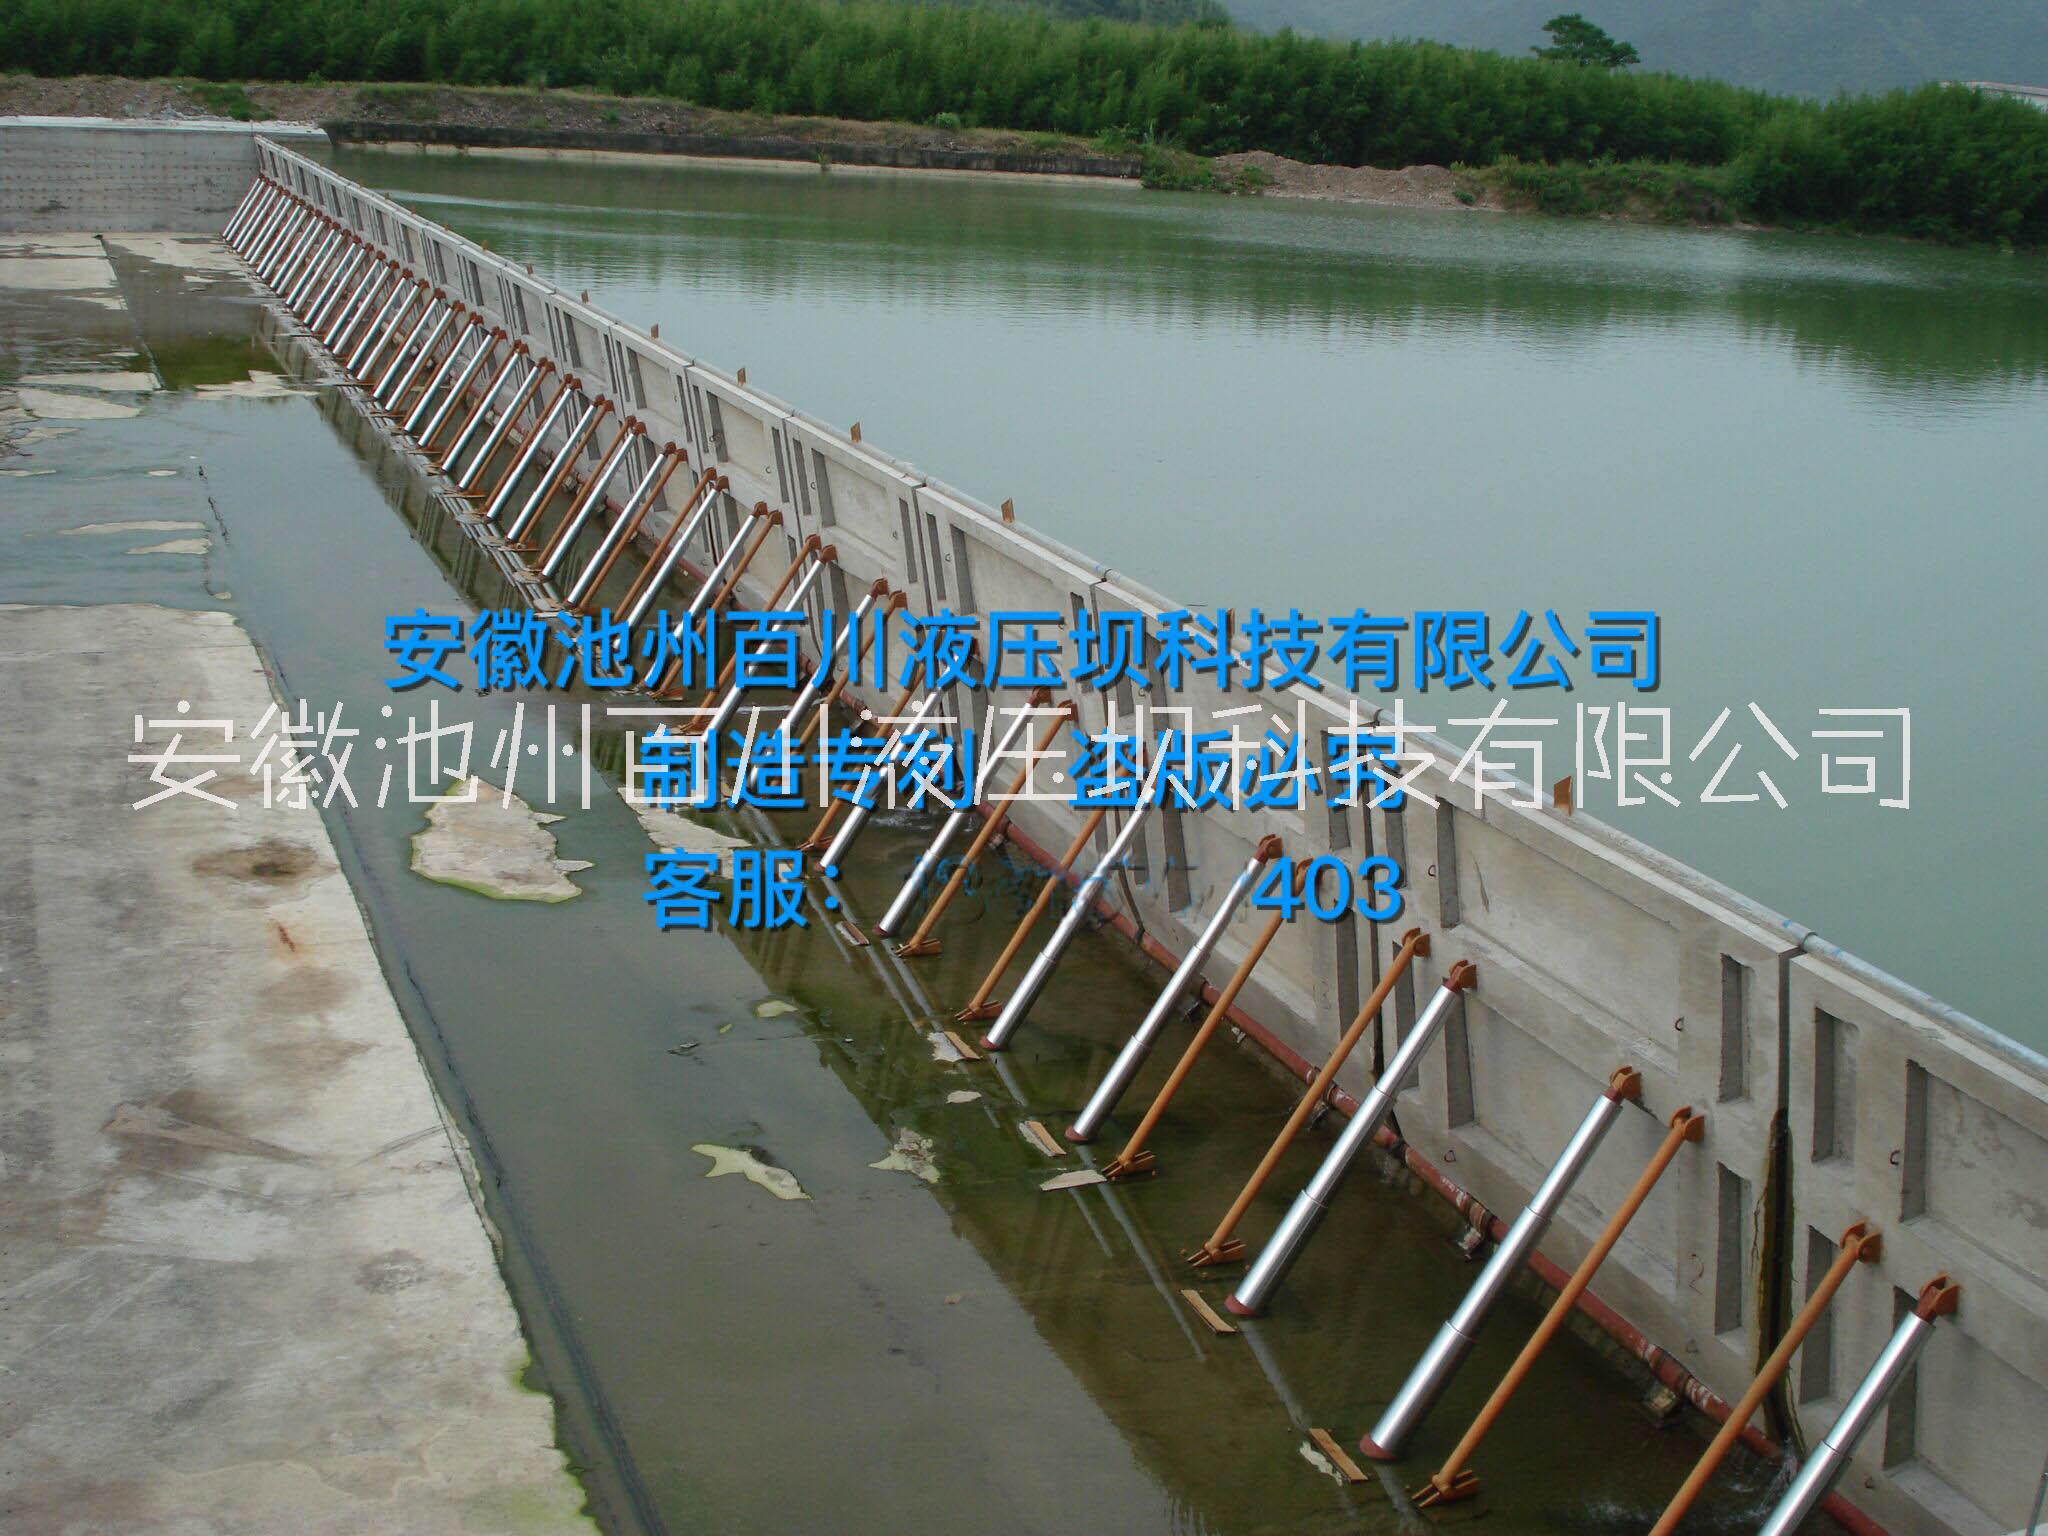 供应用于拦水、行洪的百川液压坝升降坝行业优势技术  淘汰传统活动坝图片